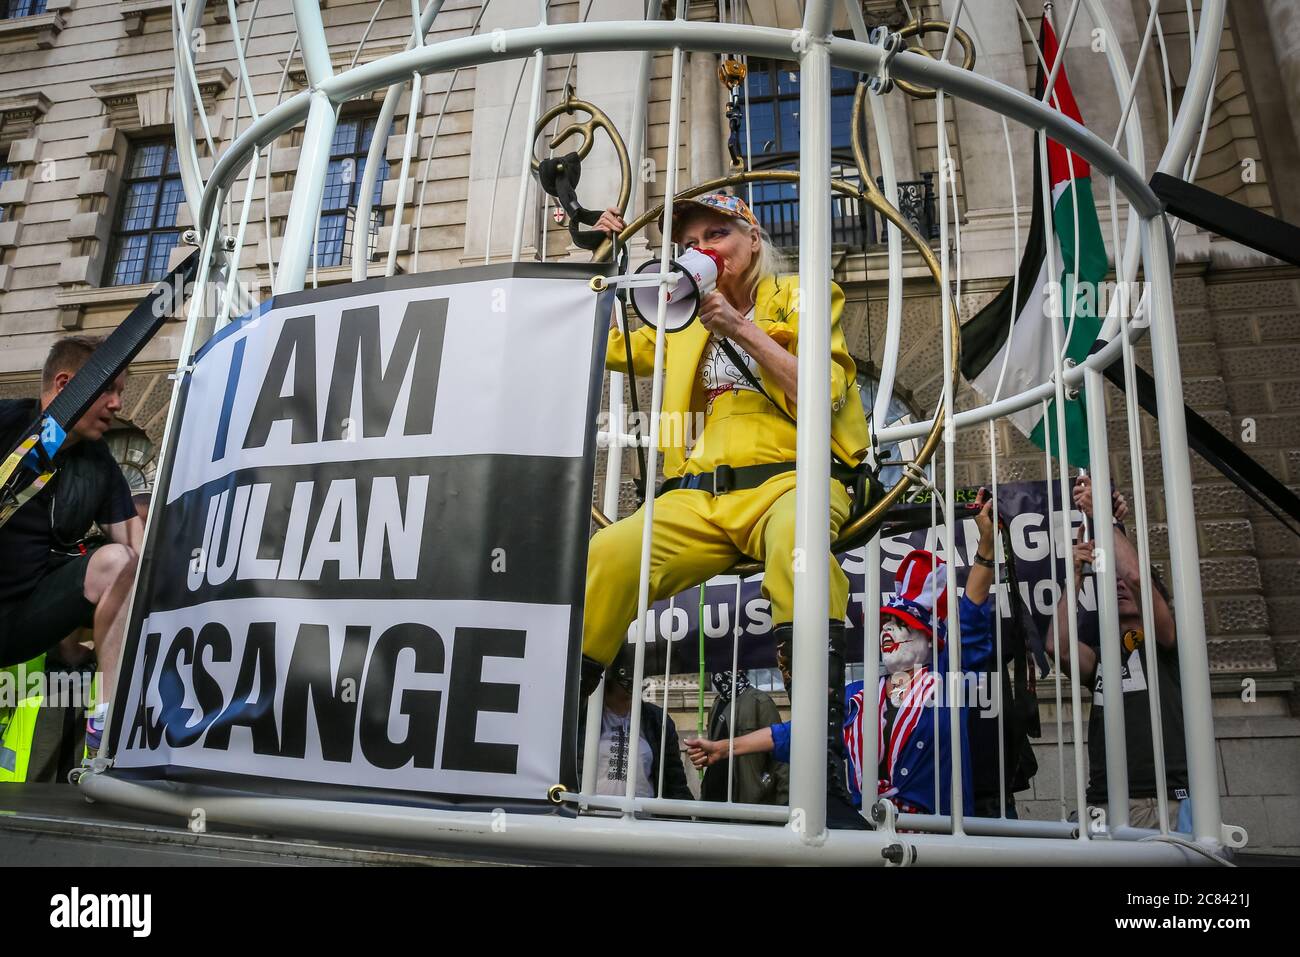 Londres, Reino Unido, 21 de julio de 2020. Dame Vivienne Westwood está enjaezada en una jaula gigante con un signo de "Yo soy Julian Assange", y suspendido 10 pies en el aire frente a la Corte Penal Old Bailey, en protesta por la extradición de Estados Unidos de Julian Assange. Westwood está vestido con un traje de pantalón amarillo, que enfigura la metáfora de la mina de carbón de Canarias, para ilustrar que Assange está siendo sacrificado. Ella posó más tarde delante del viejo Bailey con su mensaje. Crédito: Imageplotter/Alamy Live News Foto de stock